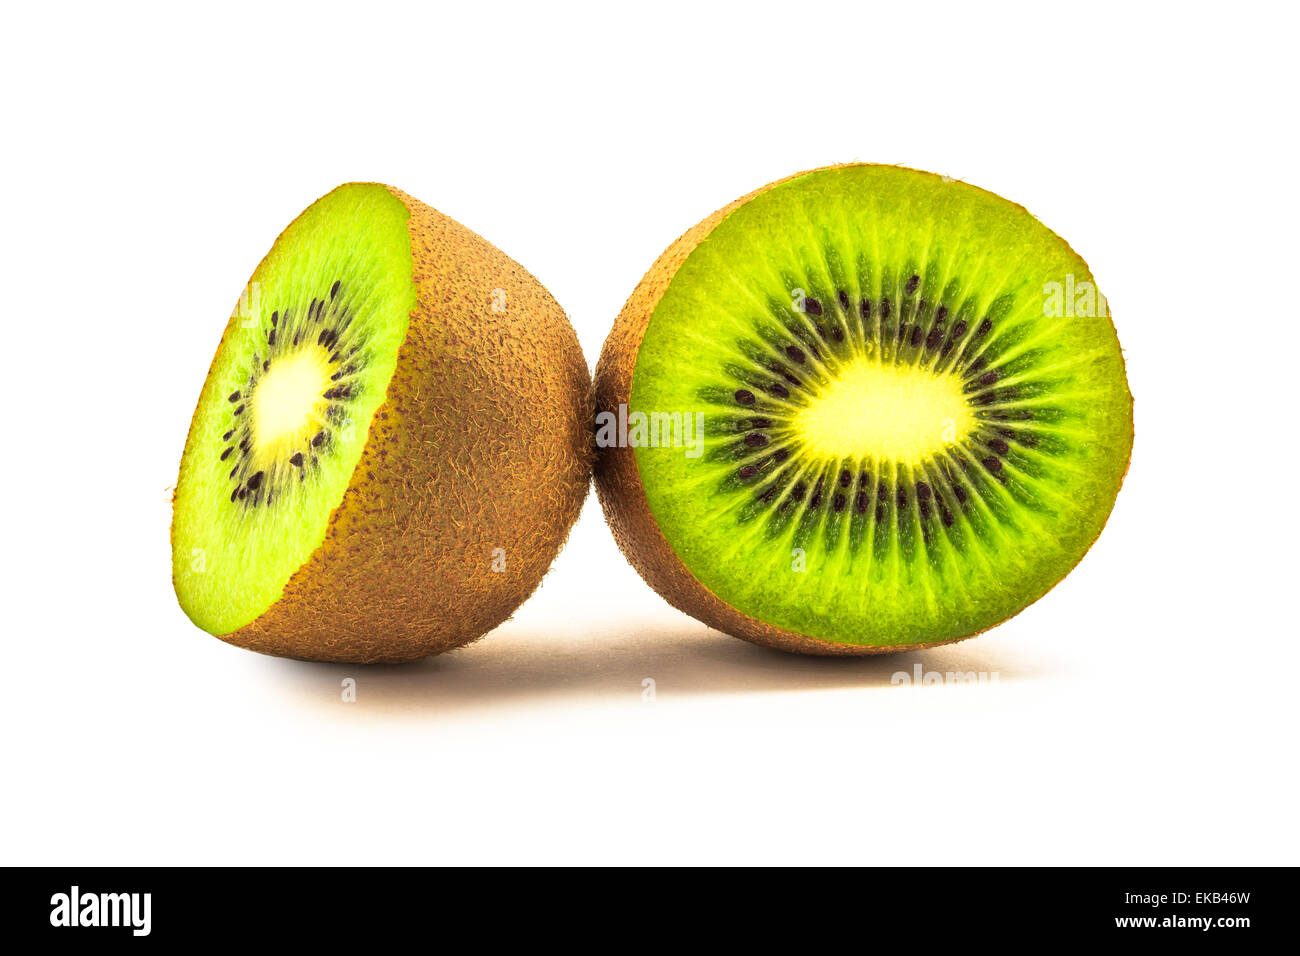 Cross section of Kiwi Fruit on white background Stock Photo